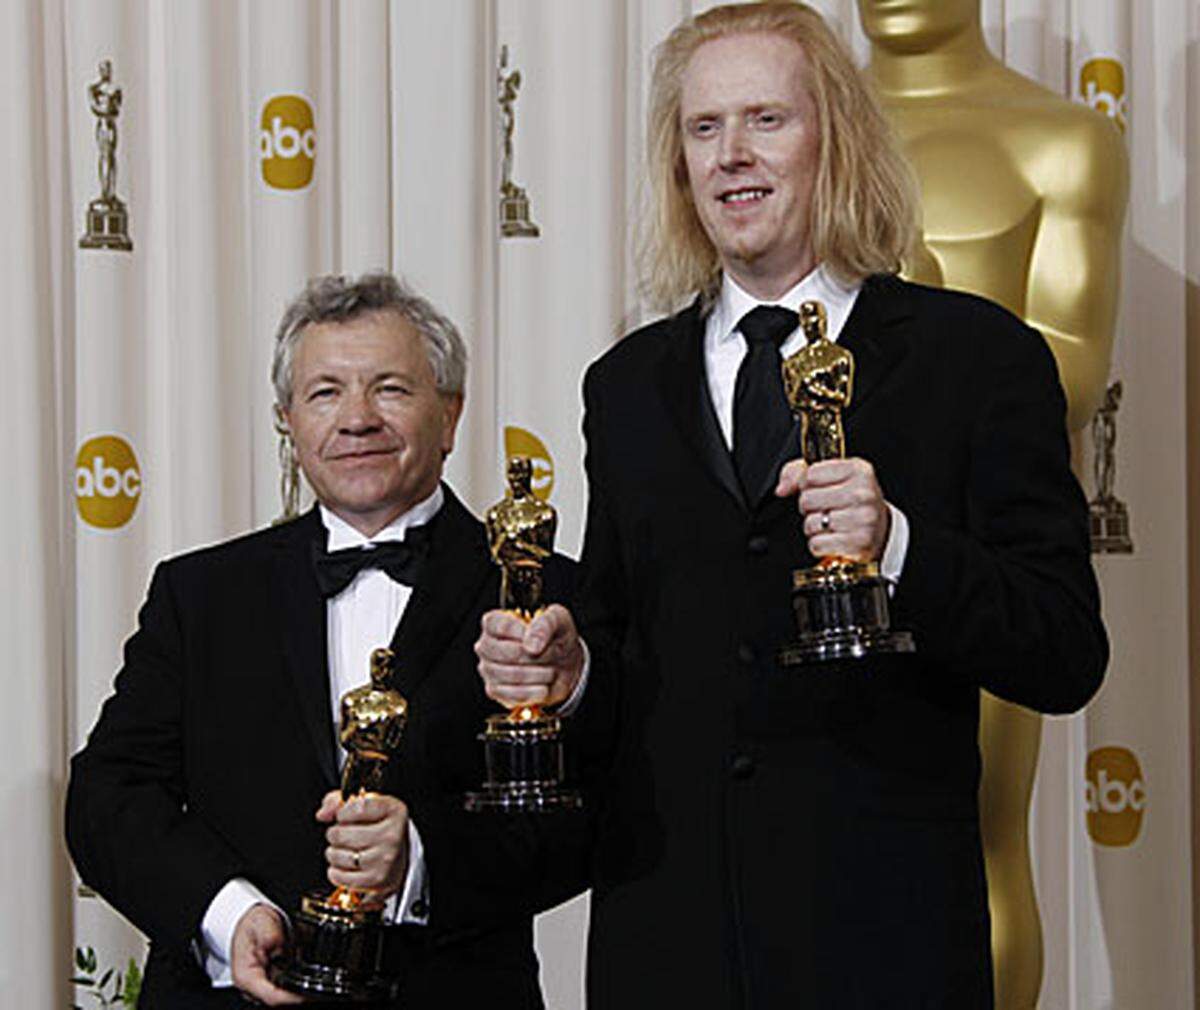 Diese Männer machen Töne: Paul N.J. Ottosson (rechts) erhielt den Oscar für den Besten Tonschnitt, gemeinsam mit Ray Beckett erhielt er nur wenig später den Oscar für den Besten Ton für "The Hurt Locker".